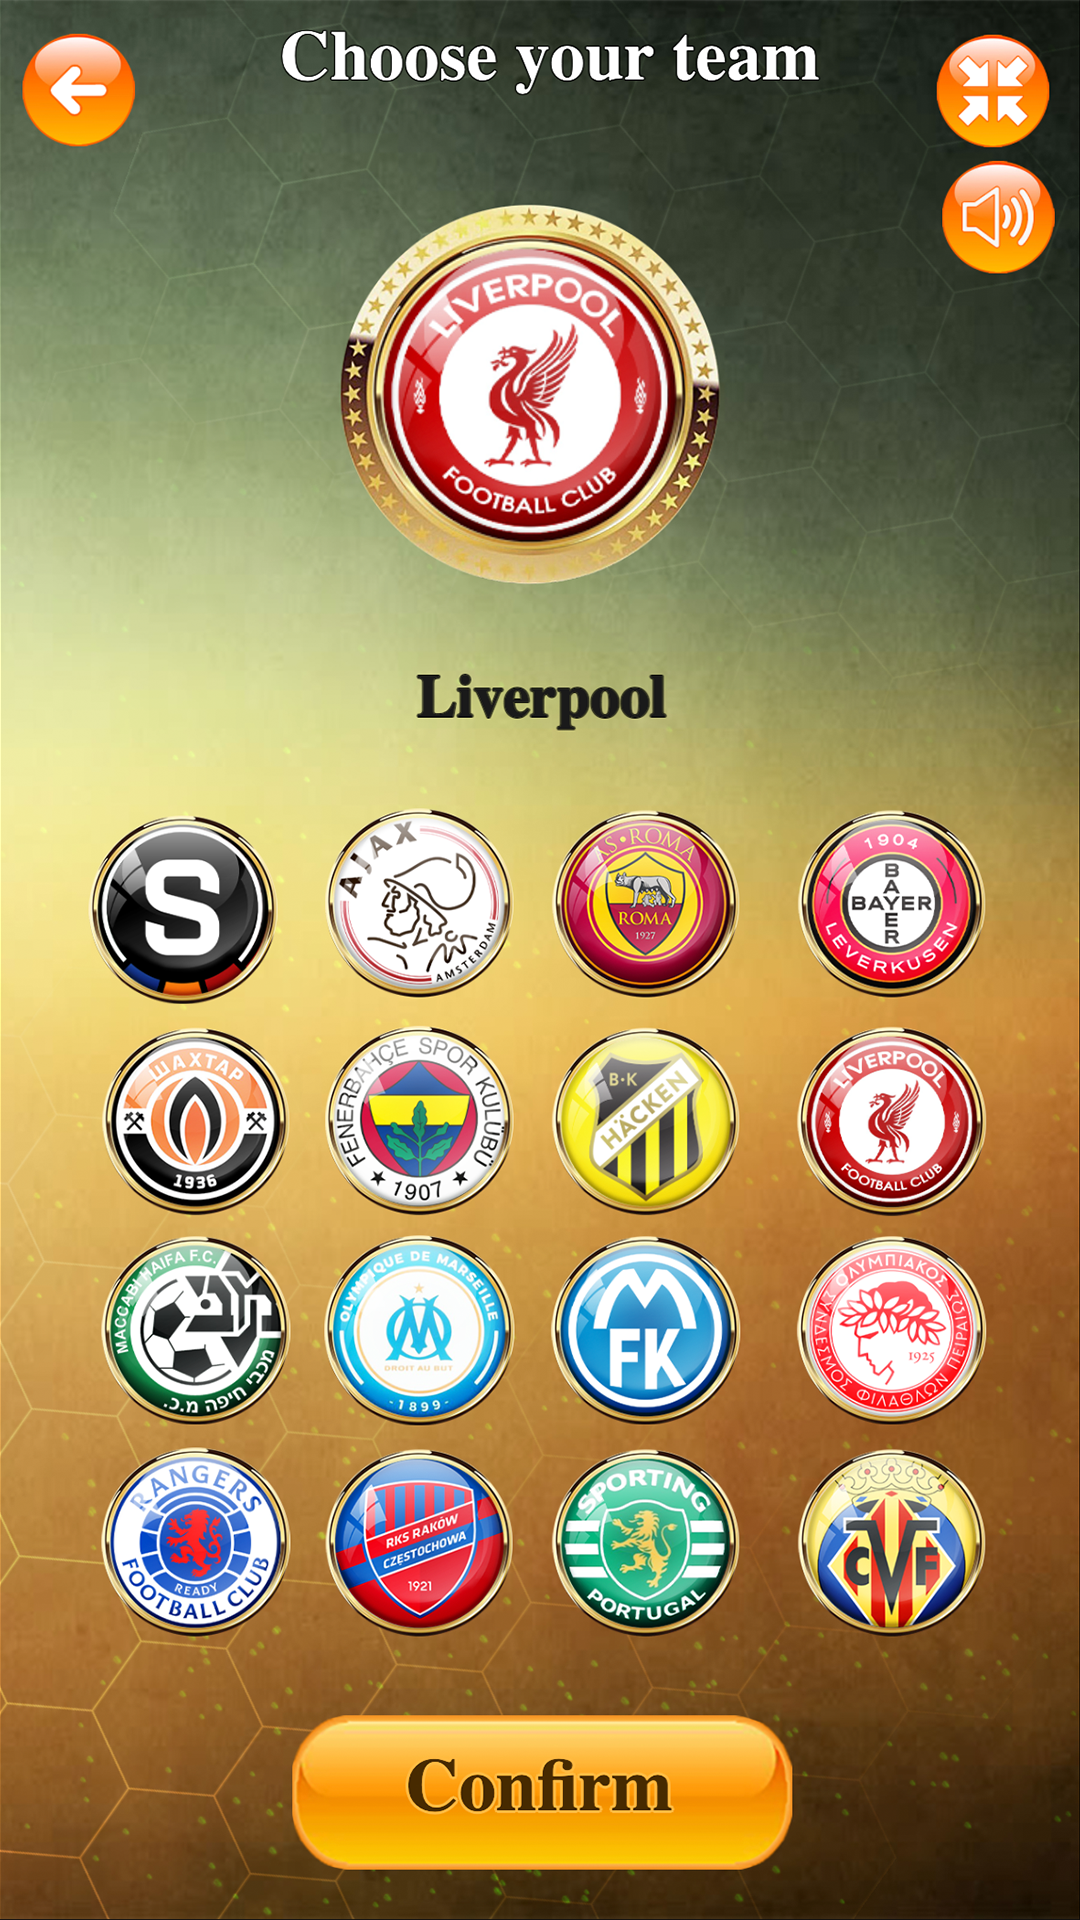 Screenshot of Europa League Game